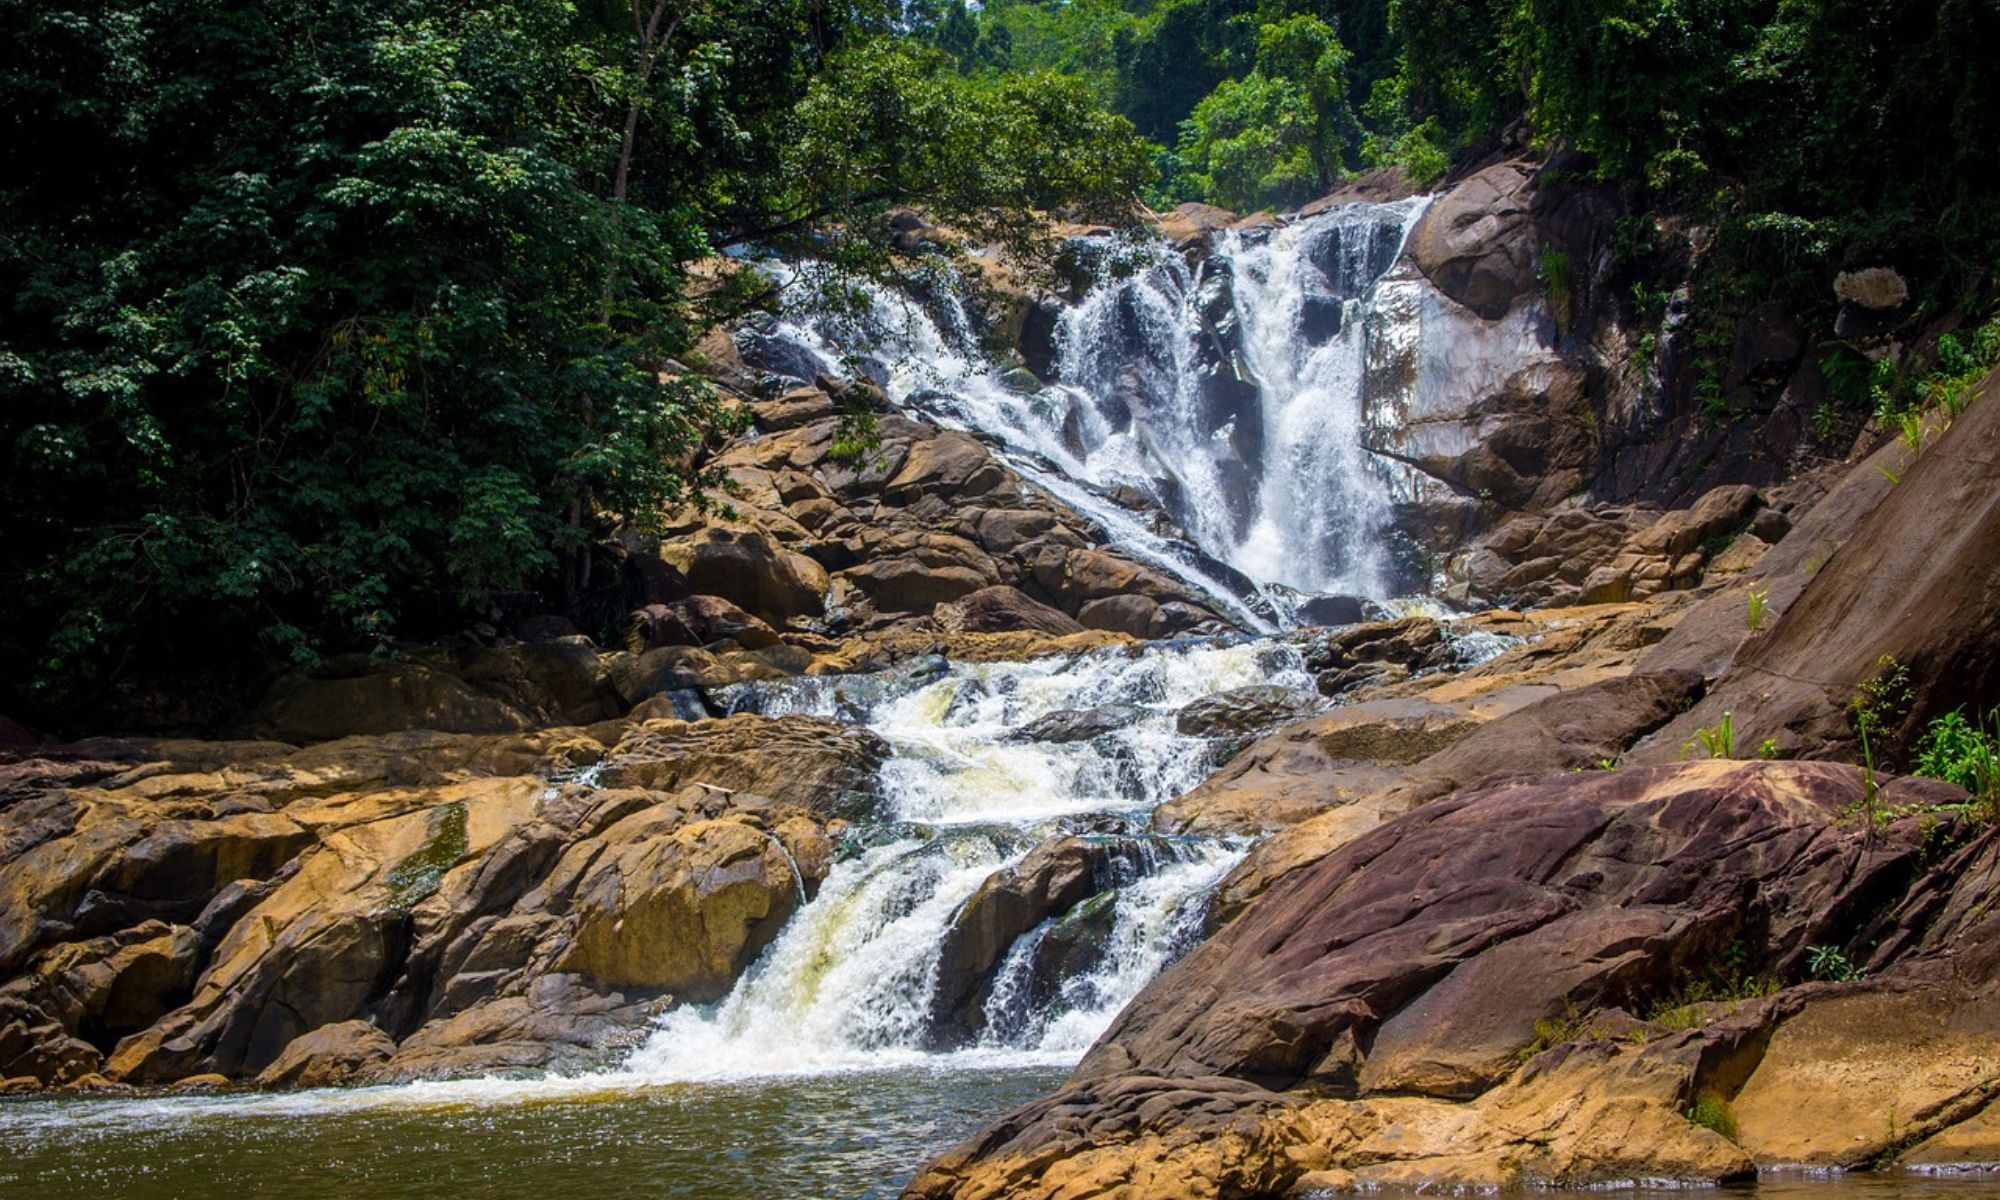 Explore Beauty of Waterfalls in Sri Lanka